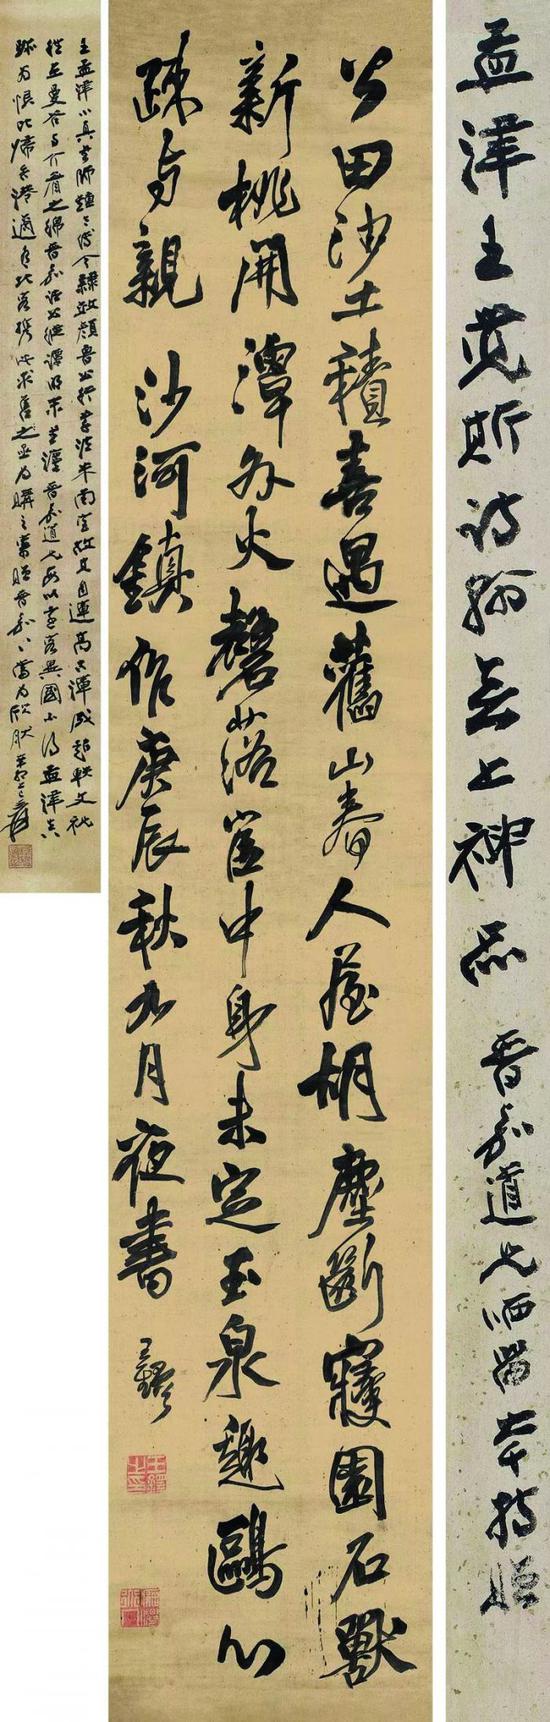 大藏家旧藏的价格浮- 赏墨斋- 集收藏与经营为一体的专业画廊